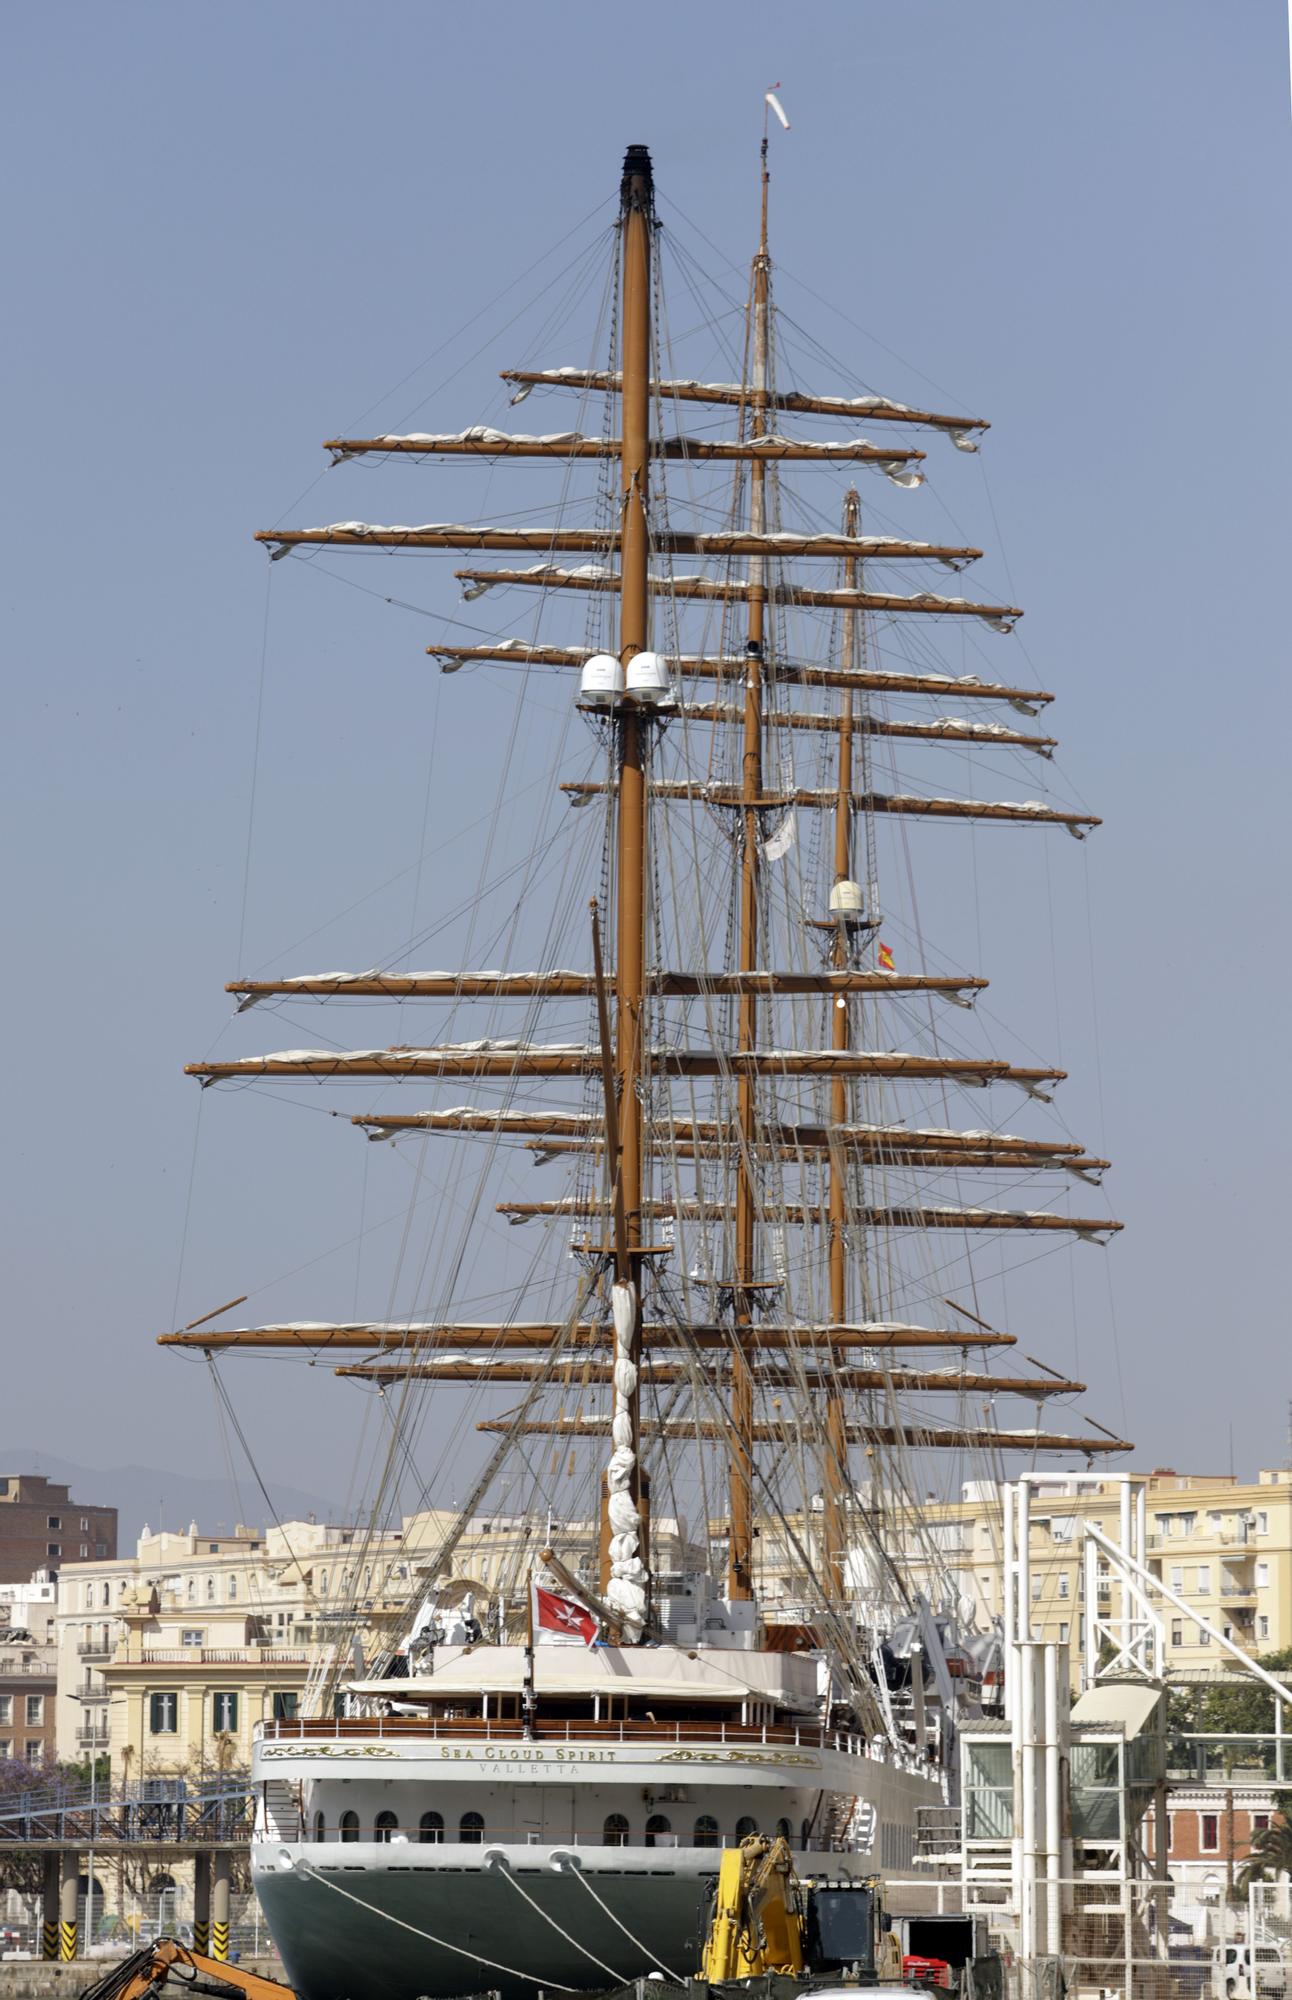 El lujoso 'Sea Cloud Spirit' atraca en el Palmeral del Puerto de Málaga